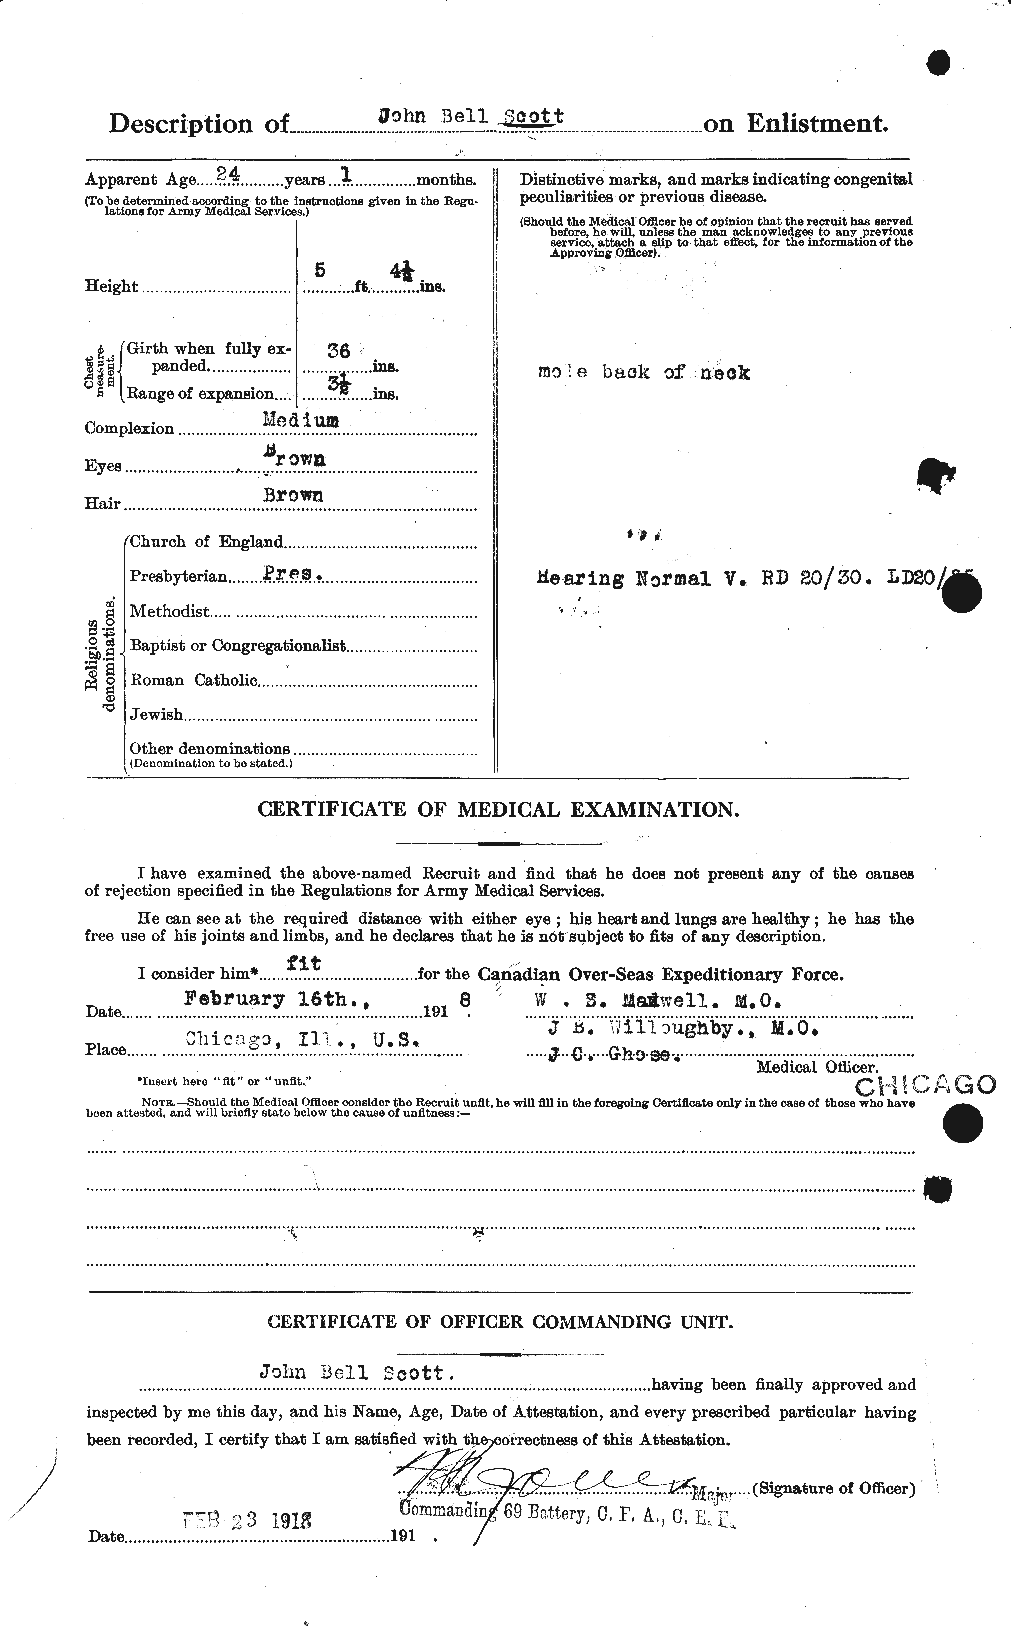 Dossiers du Personnel de la Première Guerre mondiale - CEC 084657b